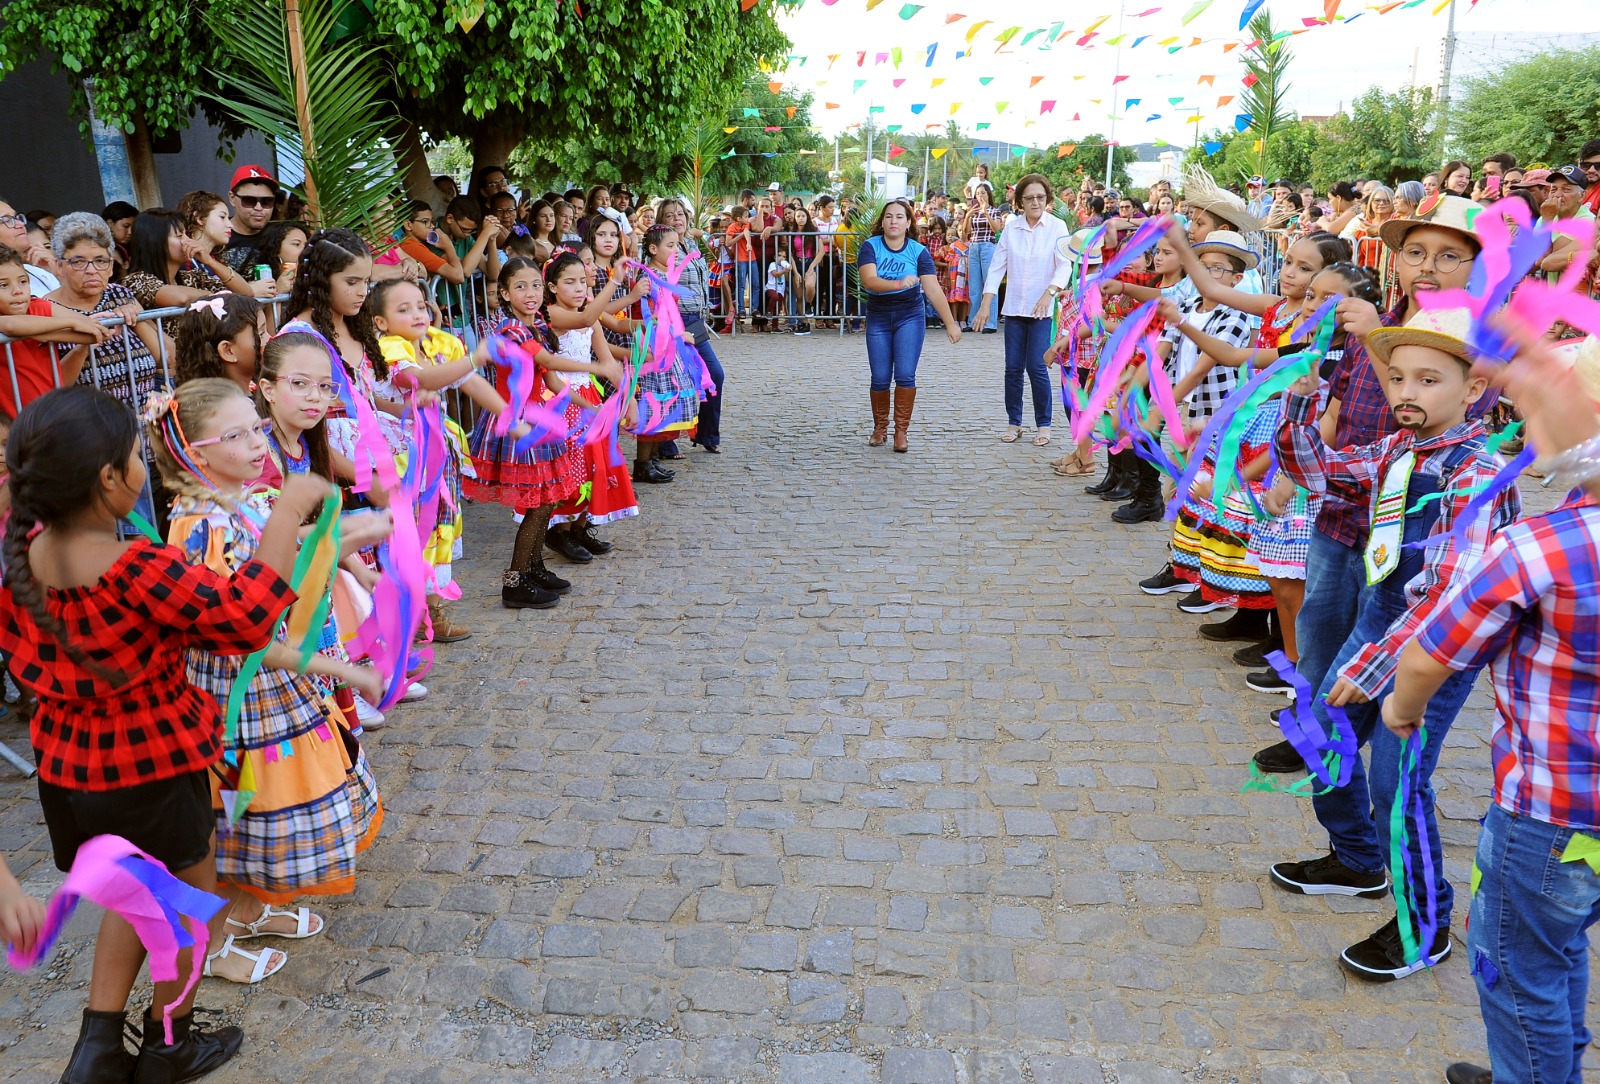 Festival-Quadrilhas-Escolares-6 Retorno às atividades: Festival de Quadrilhas movimenta comunidade escolar e atrai grande público